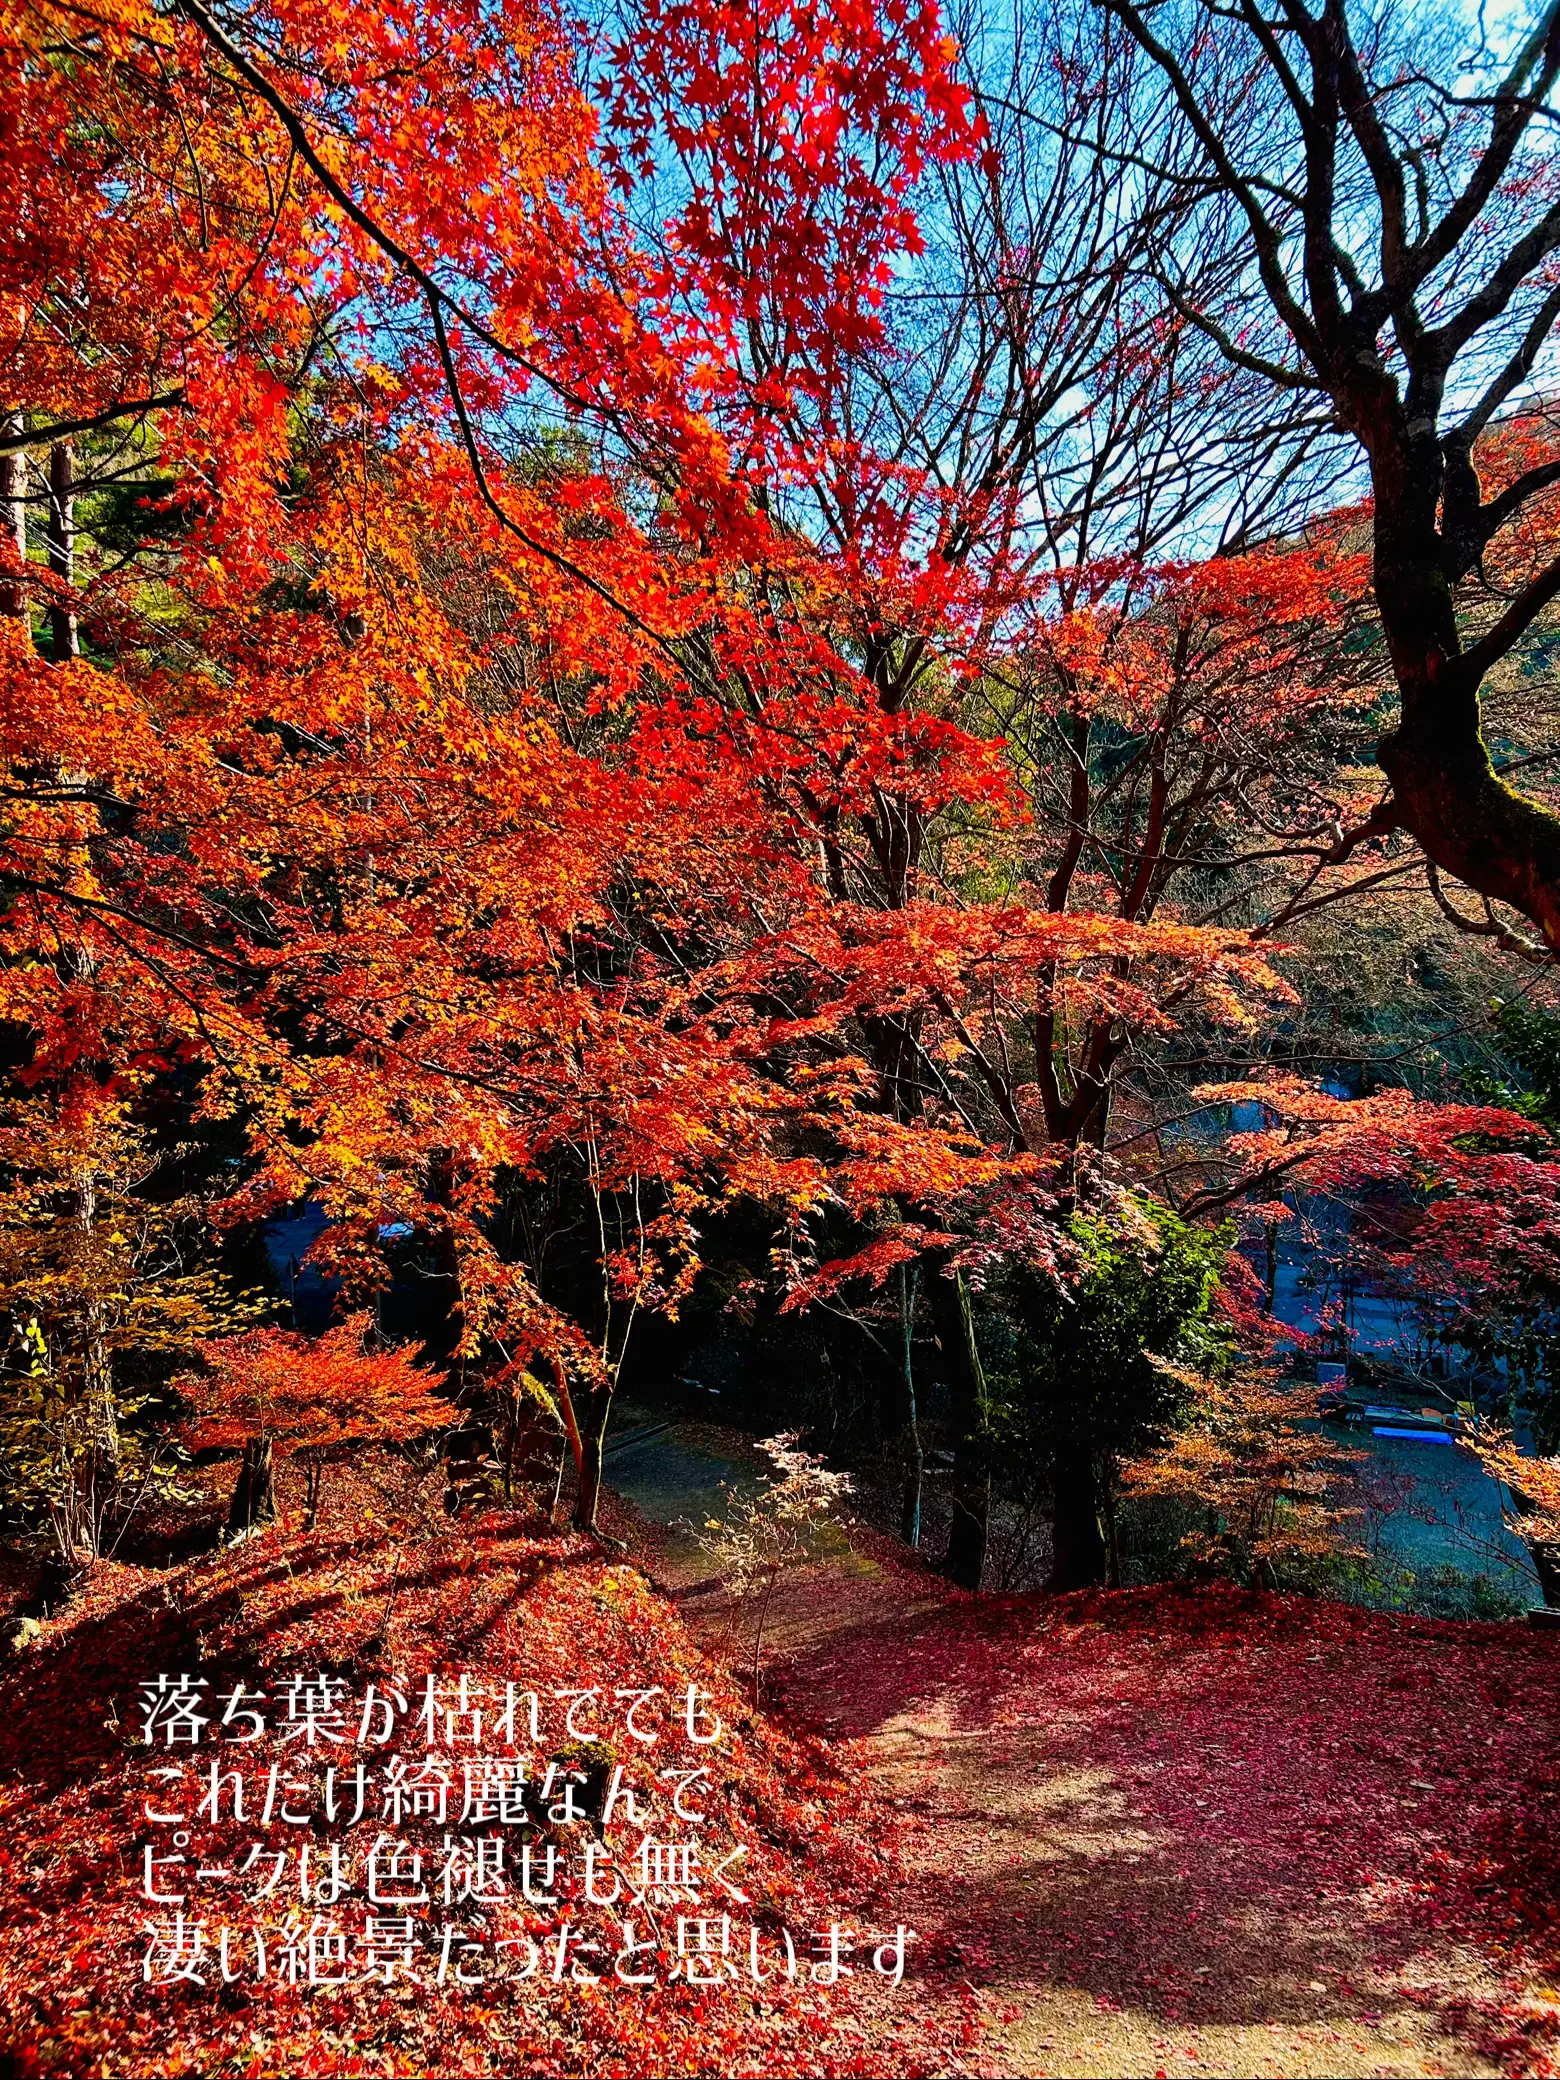 【広島】🌸桜と🍁紅葉で有名な歴史ある隠れたスポット「今高野山龍華寺」の画像 (4枚目)